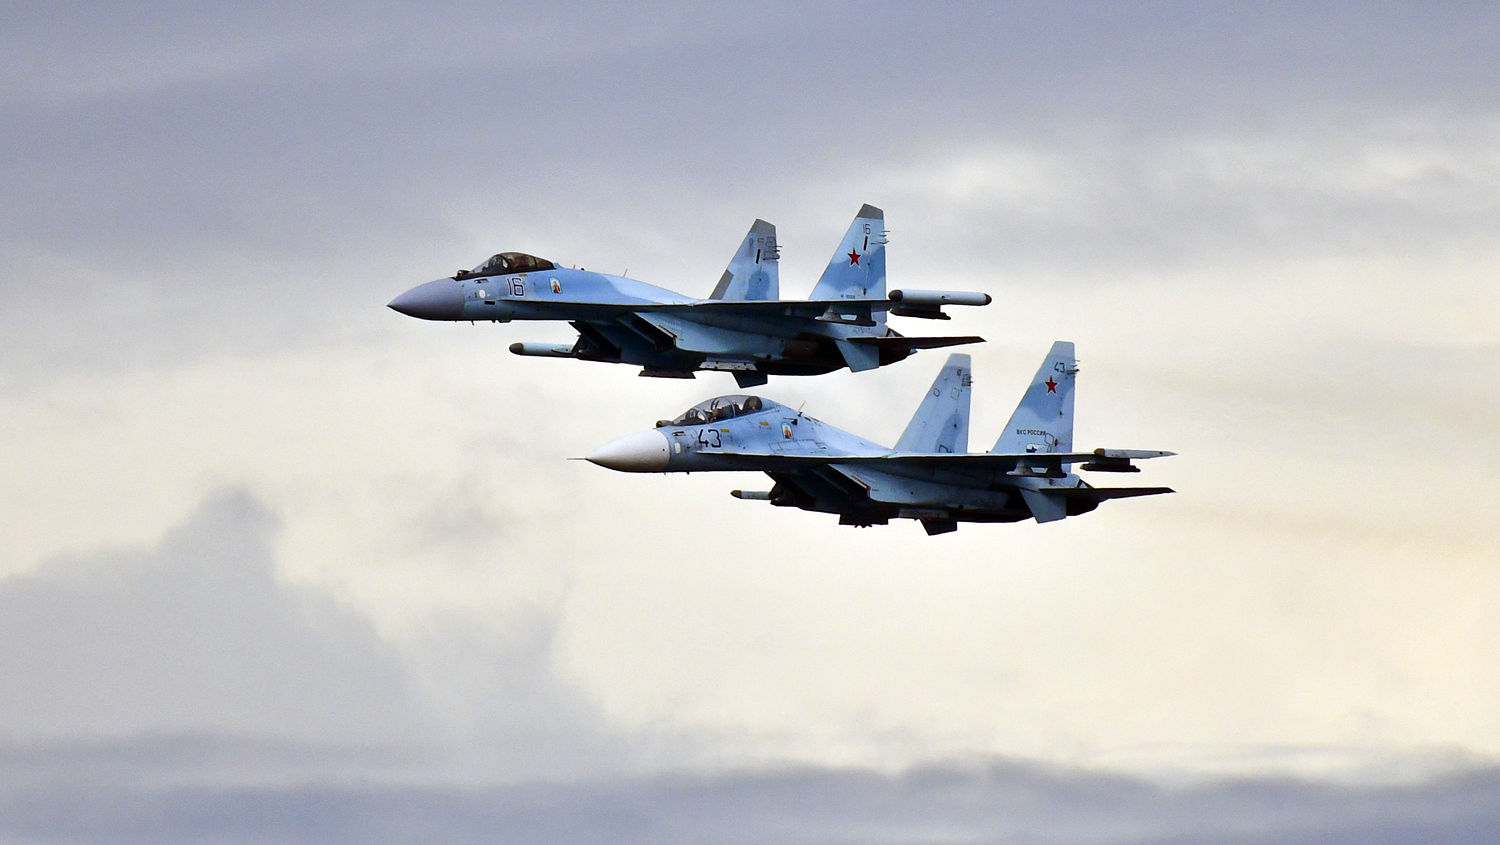 Ρωσικά μαχητικά Su-35S έχουν στήσει ενέδρα στο αεροσκάφος του Β.Ζελένσκι ο οποίος βρήκε καταφύγιο στην… Ολλανδία (upd)